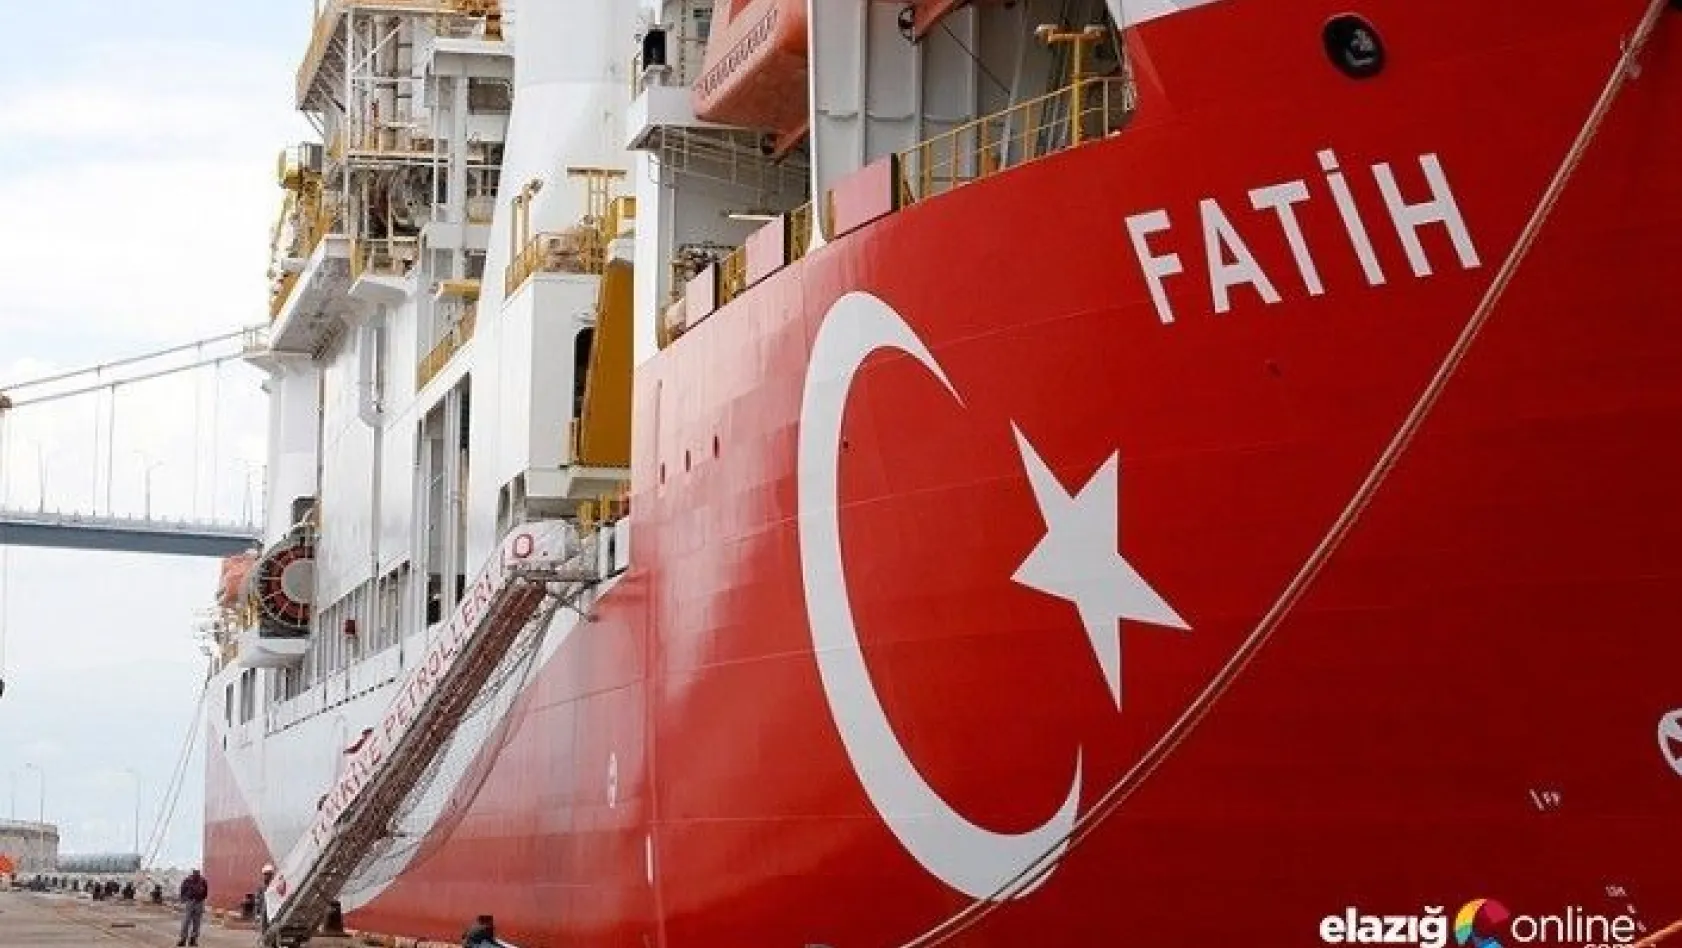 Türkiye'nin ilk sondaj gemisi Fatih ilk seferine çıkıyor